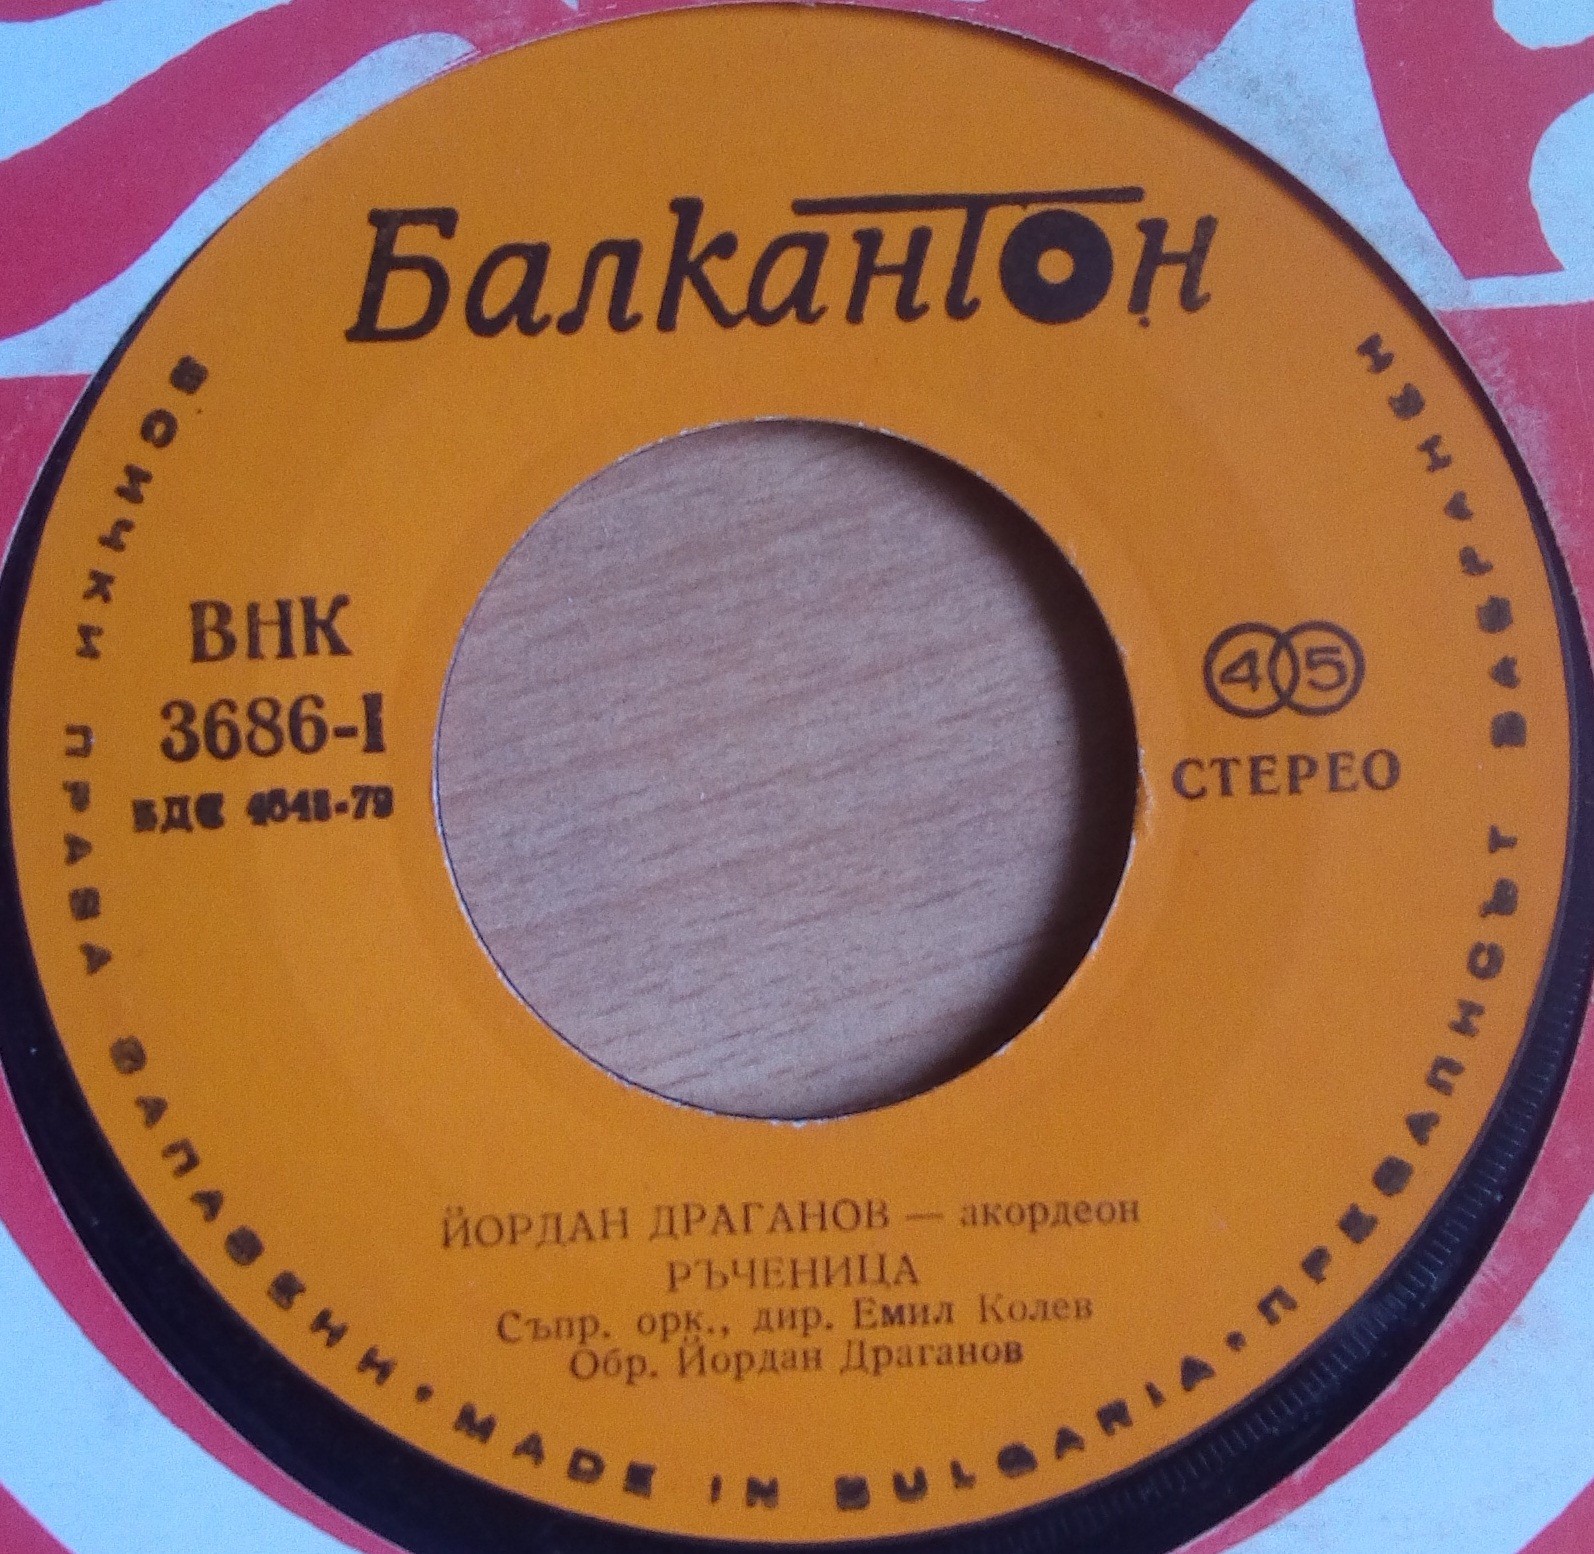 Йордан Драганов - акордеон